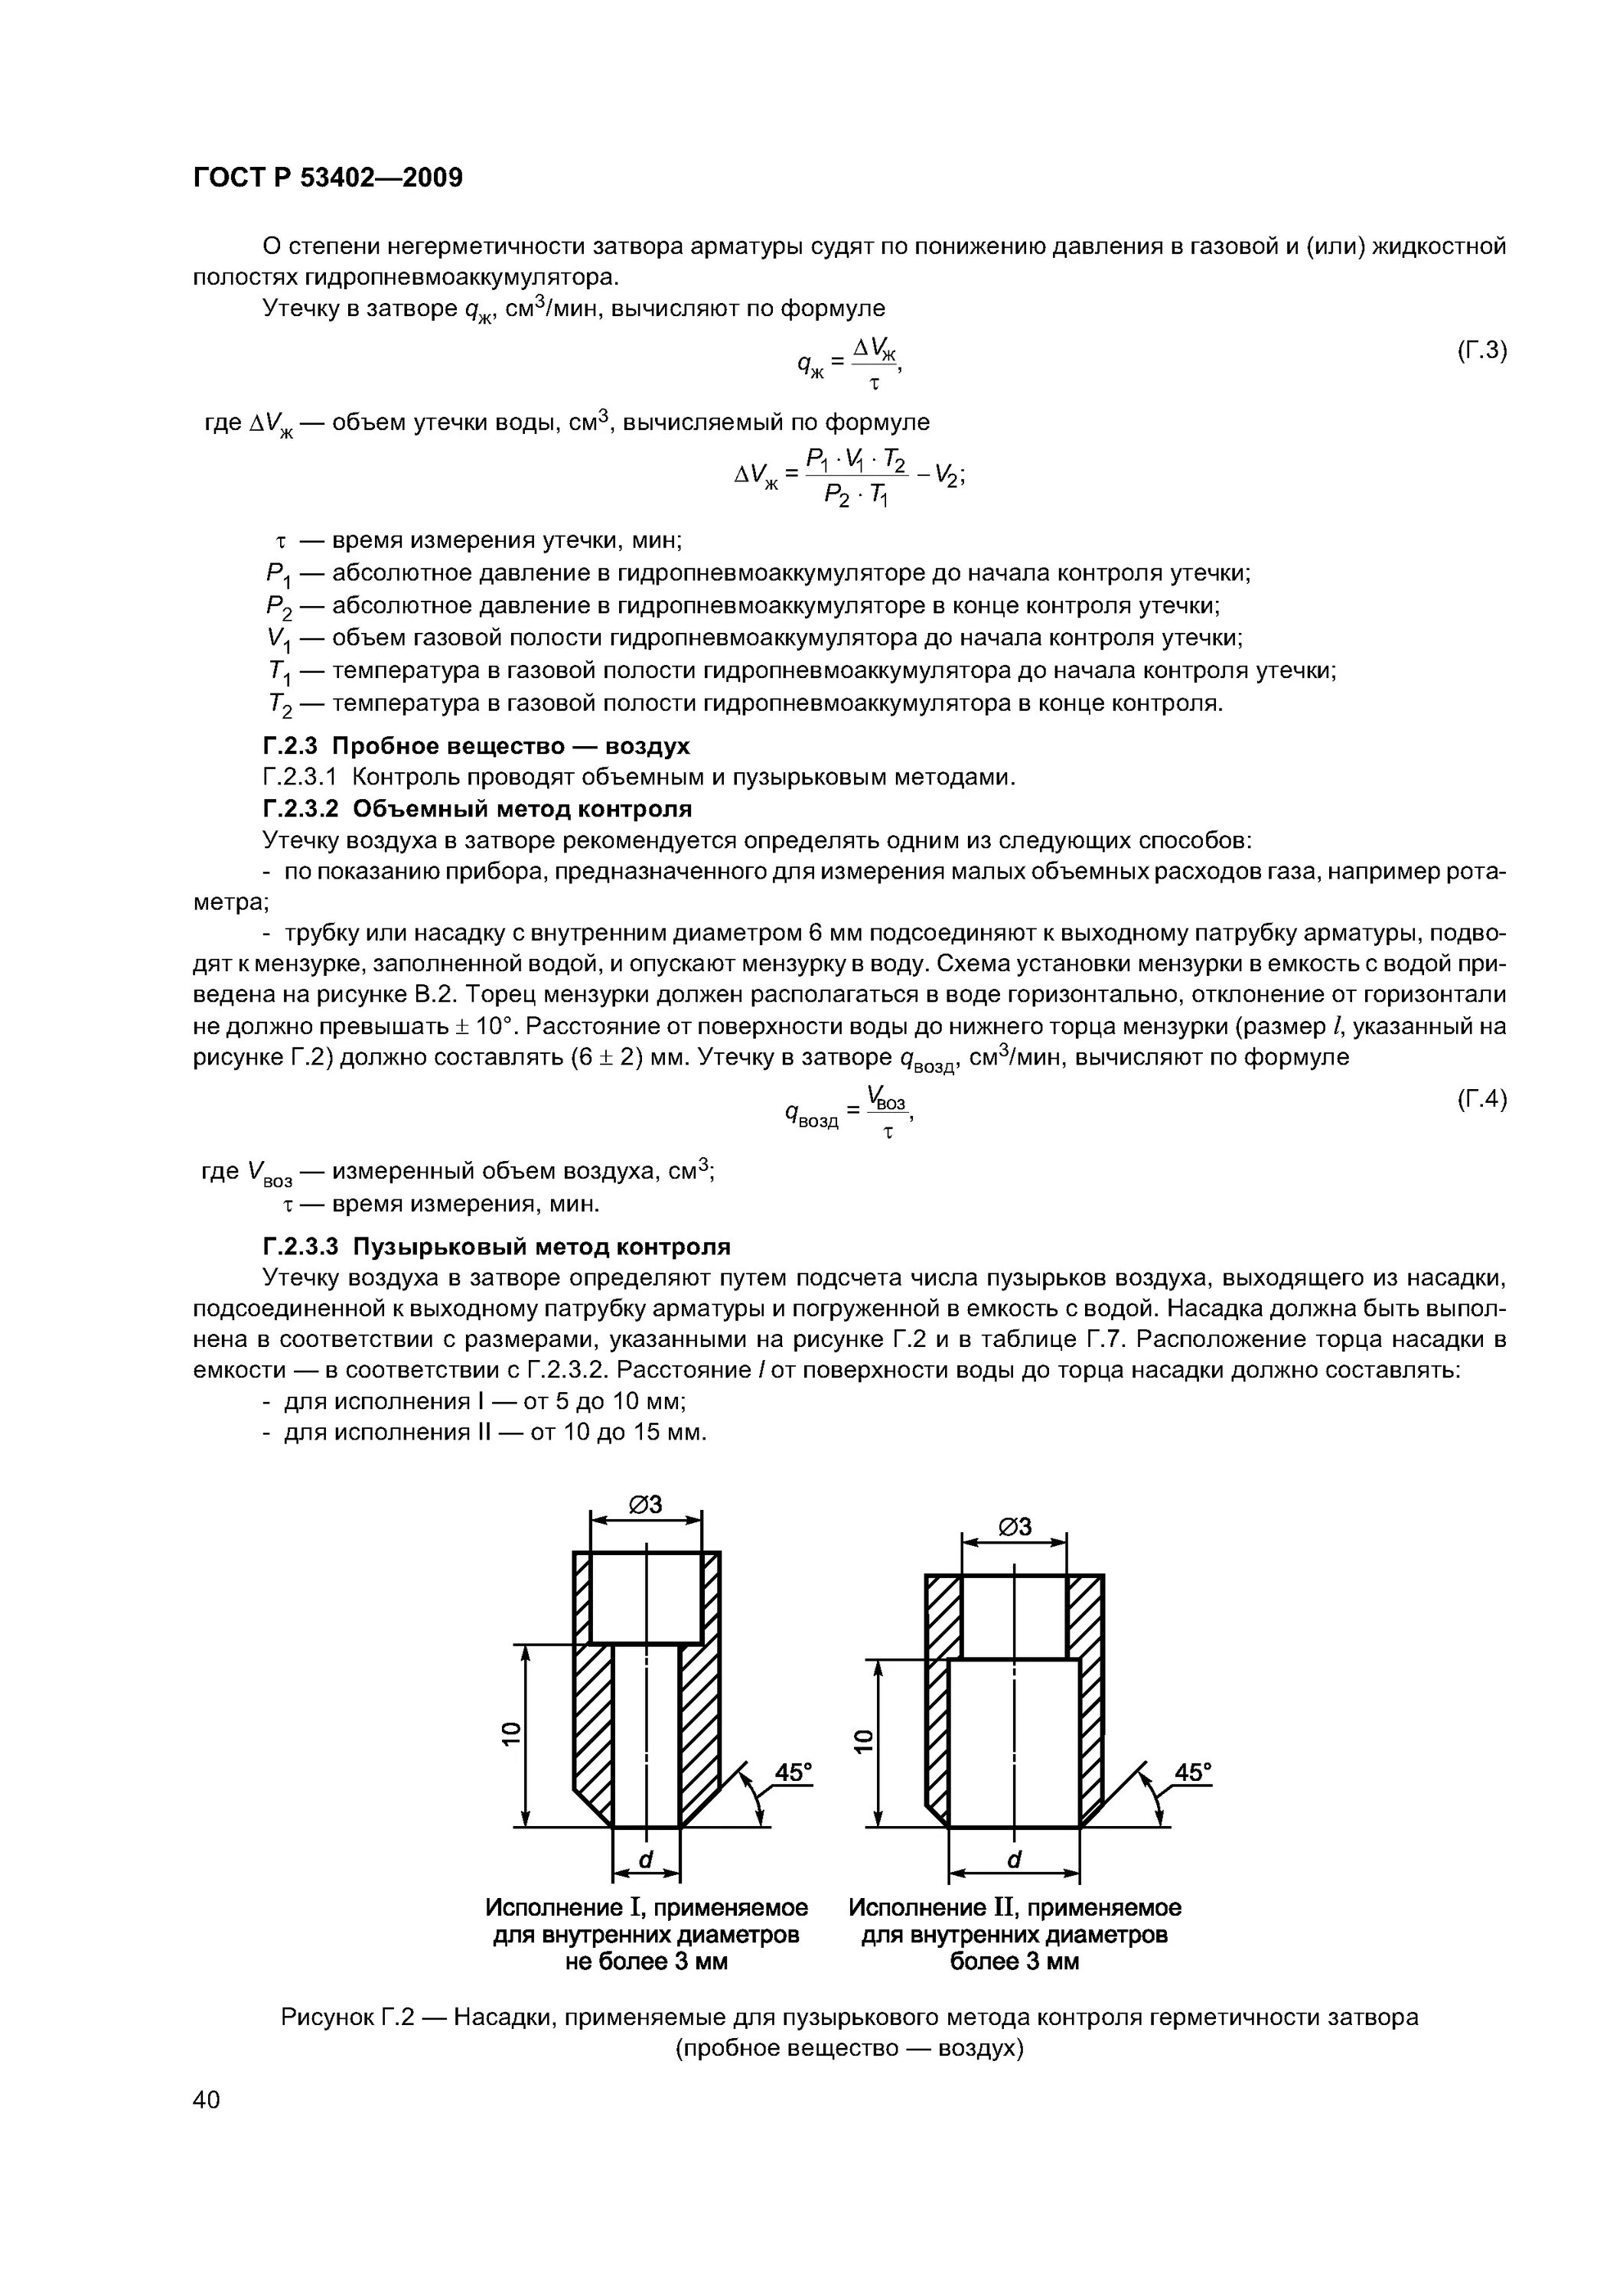 ГОСТ 53402. Пузырьковый метод контроля герметичности. Испытания трубопроводной арматуры ГОСТ. ГОСТ Р 53402-2009.